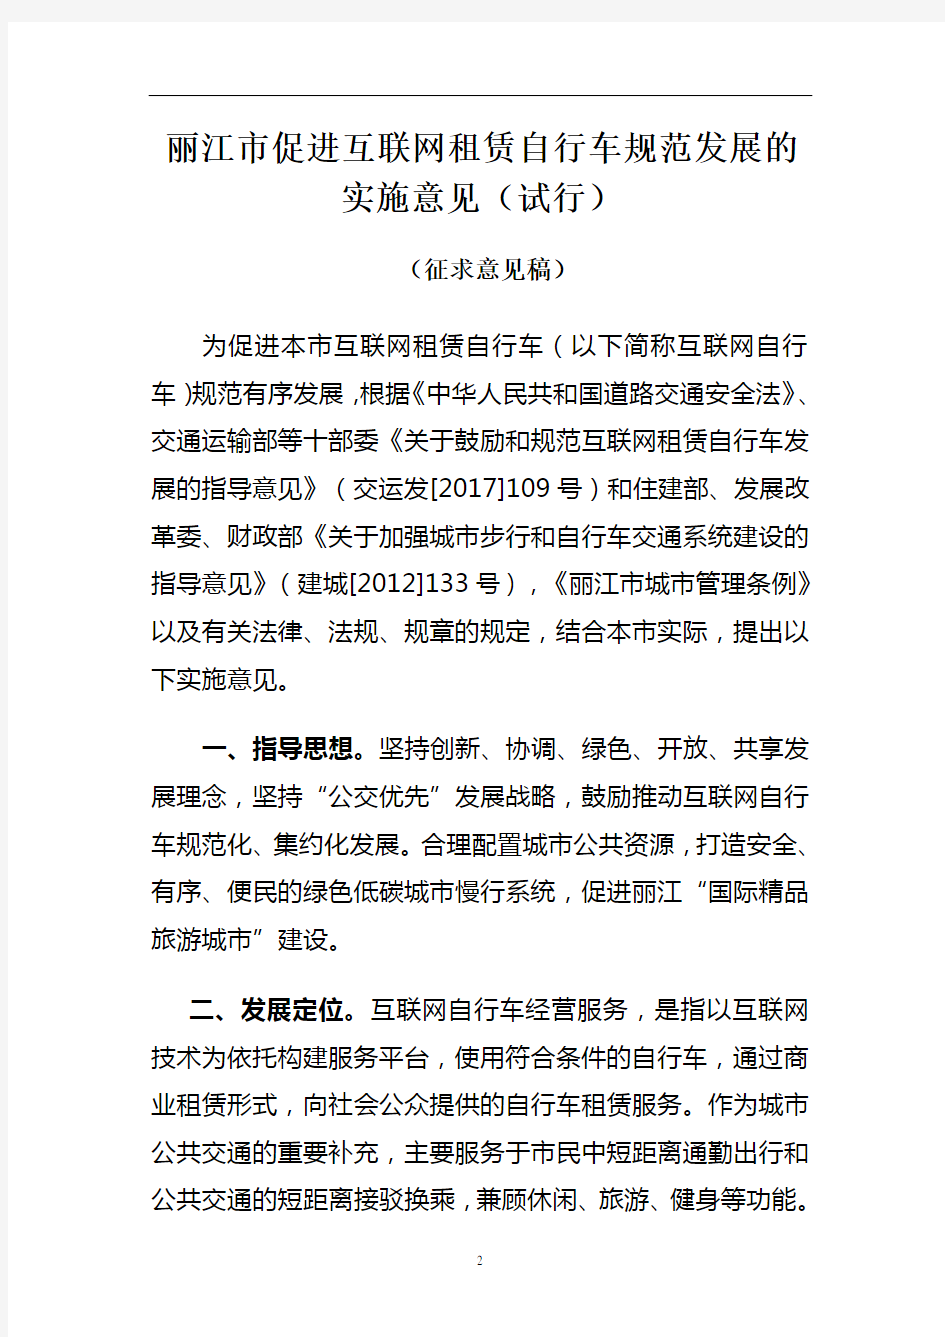 丽江市促进互联网租赁自行车规范发展的实施意见(试行)